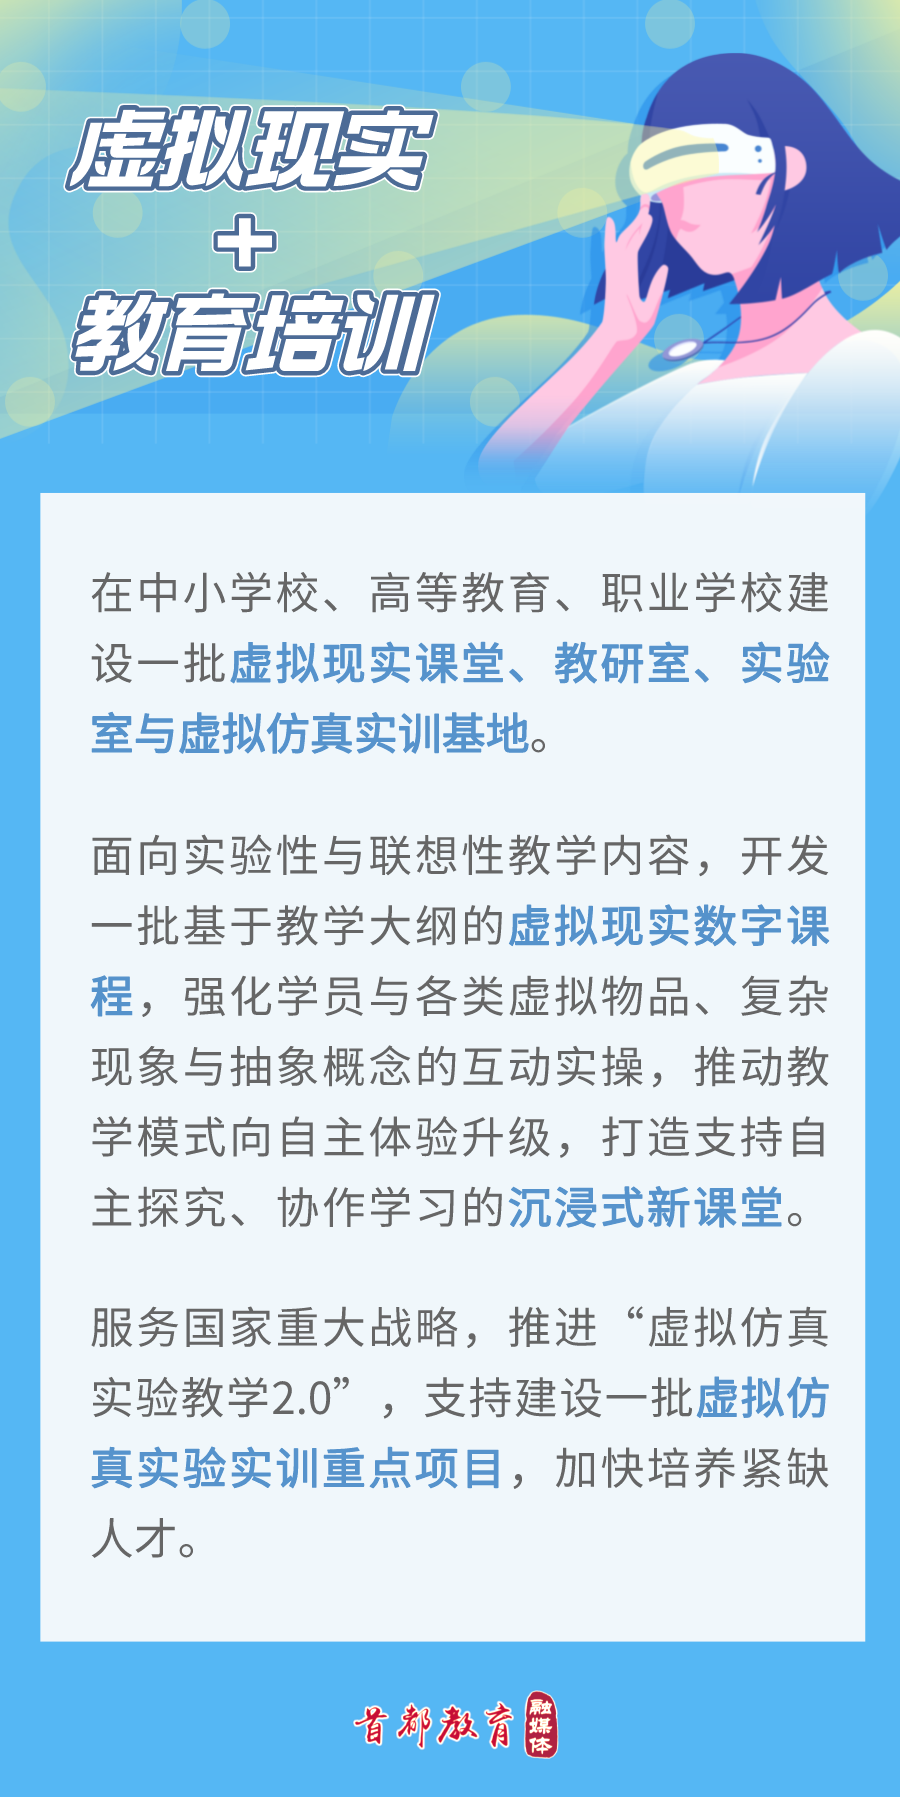 媒体管家上海新闻发布会媒体邀约服务推荐